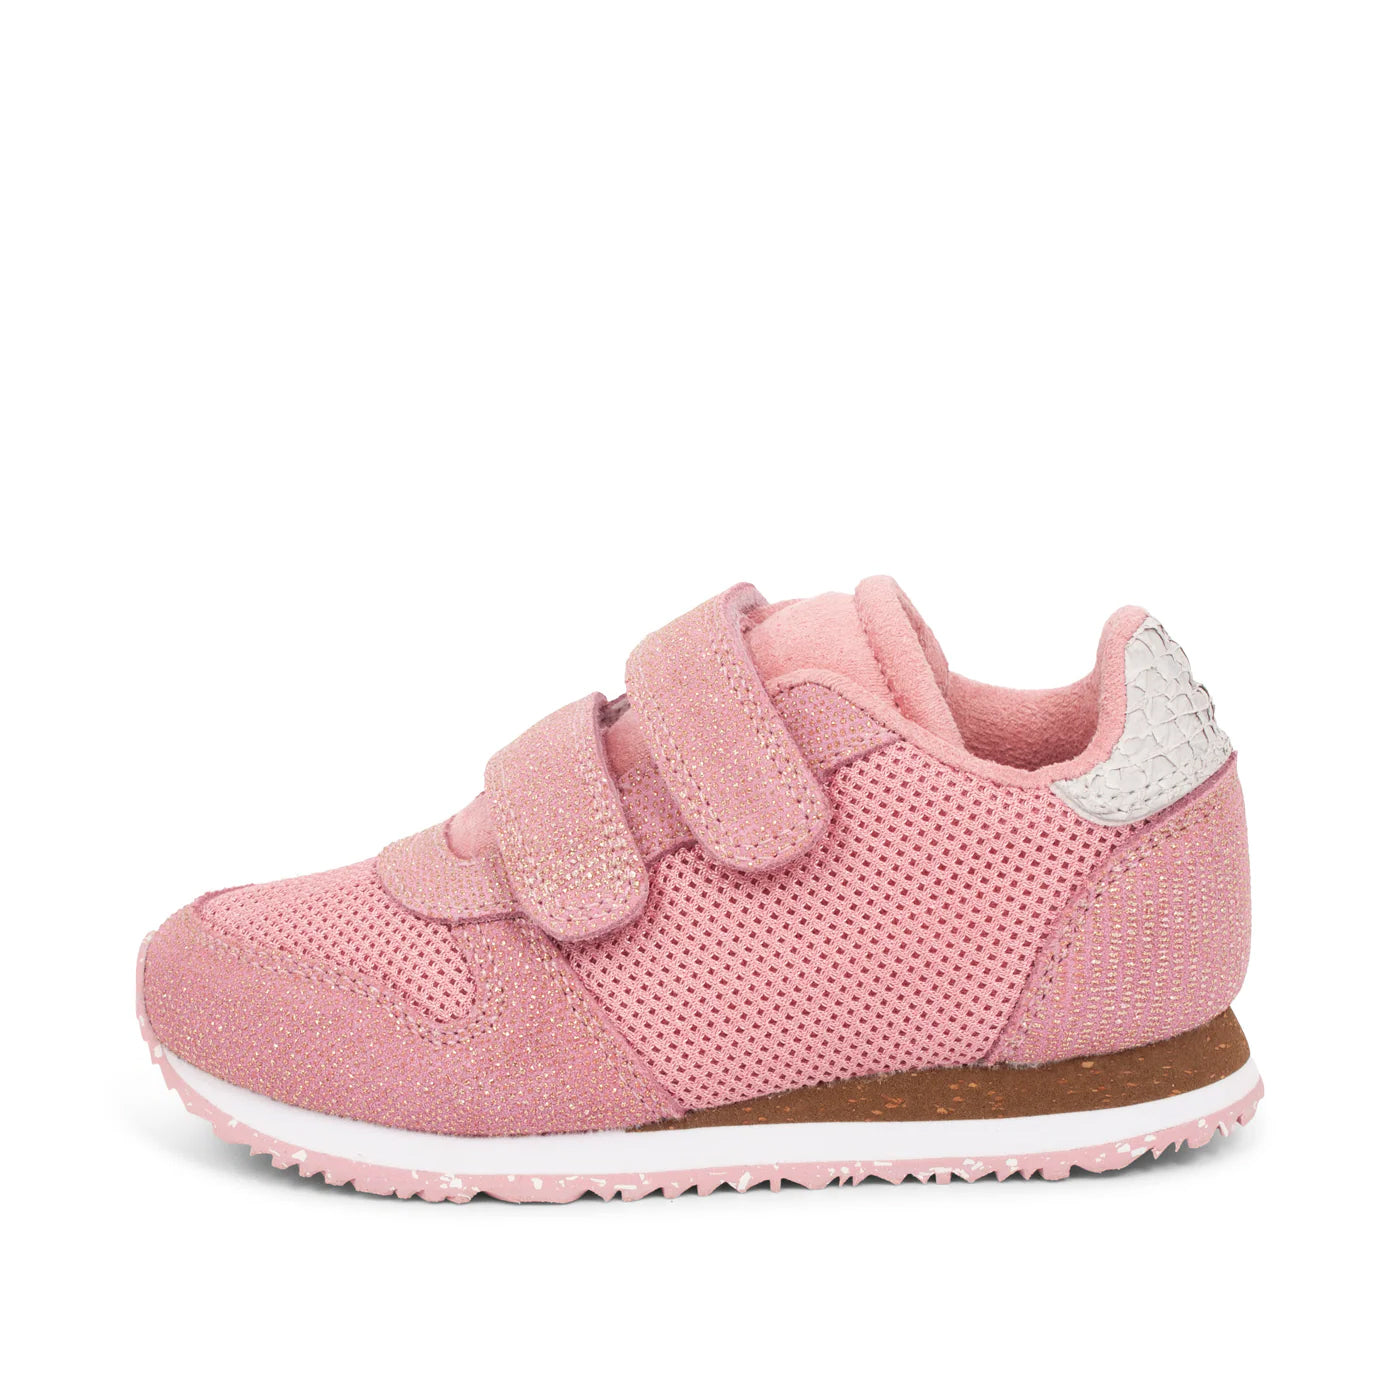 WODEN KIDS Sandra Pearl II Sneakers 761 Soft Pink